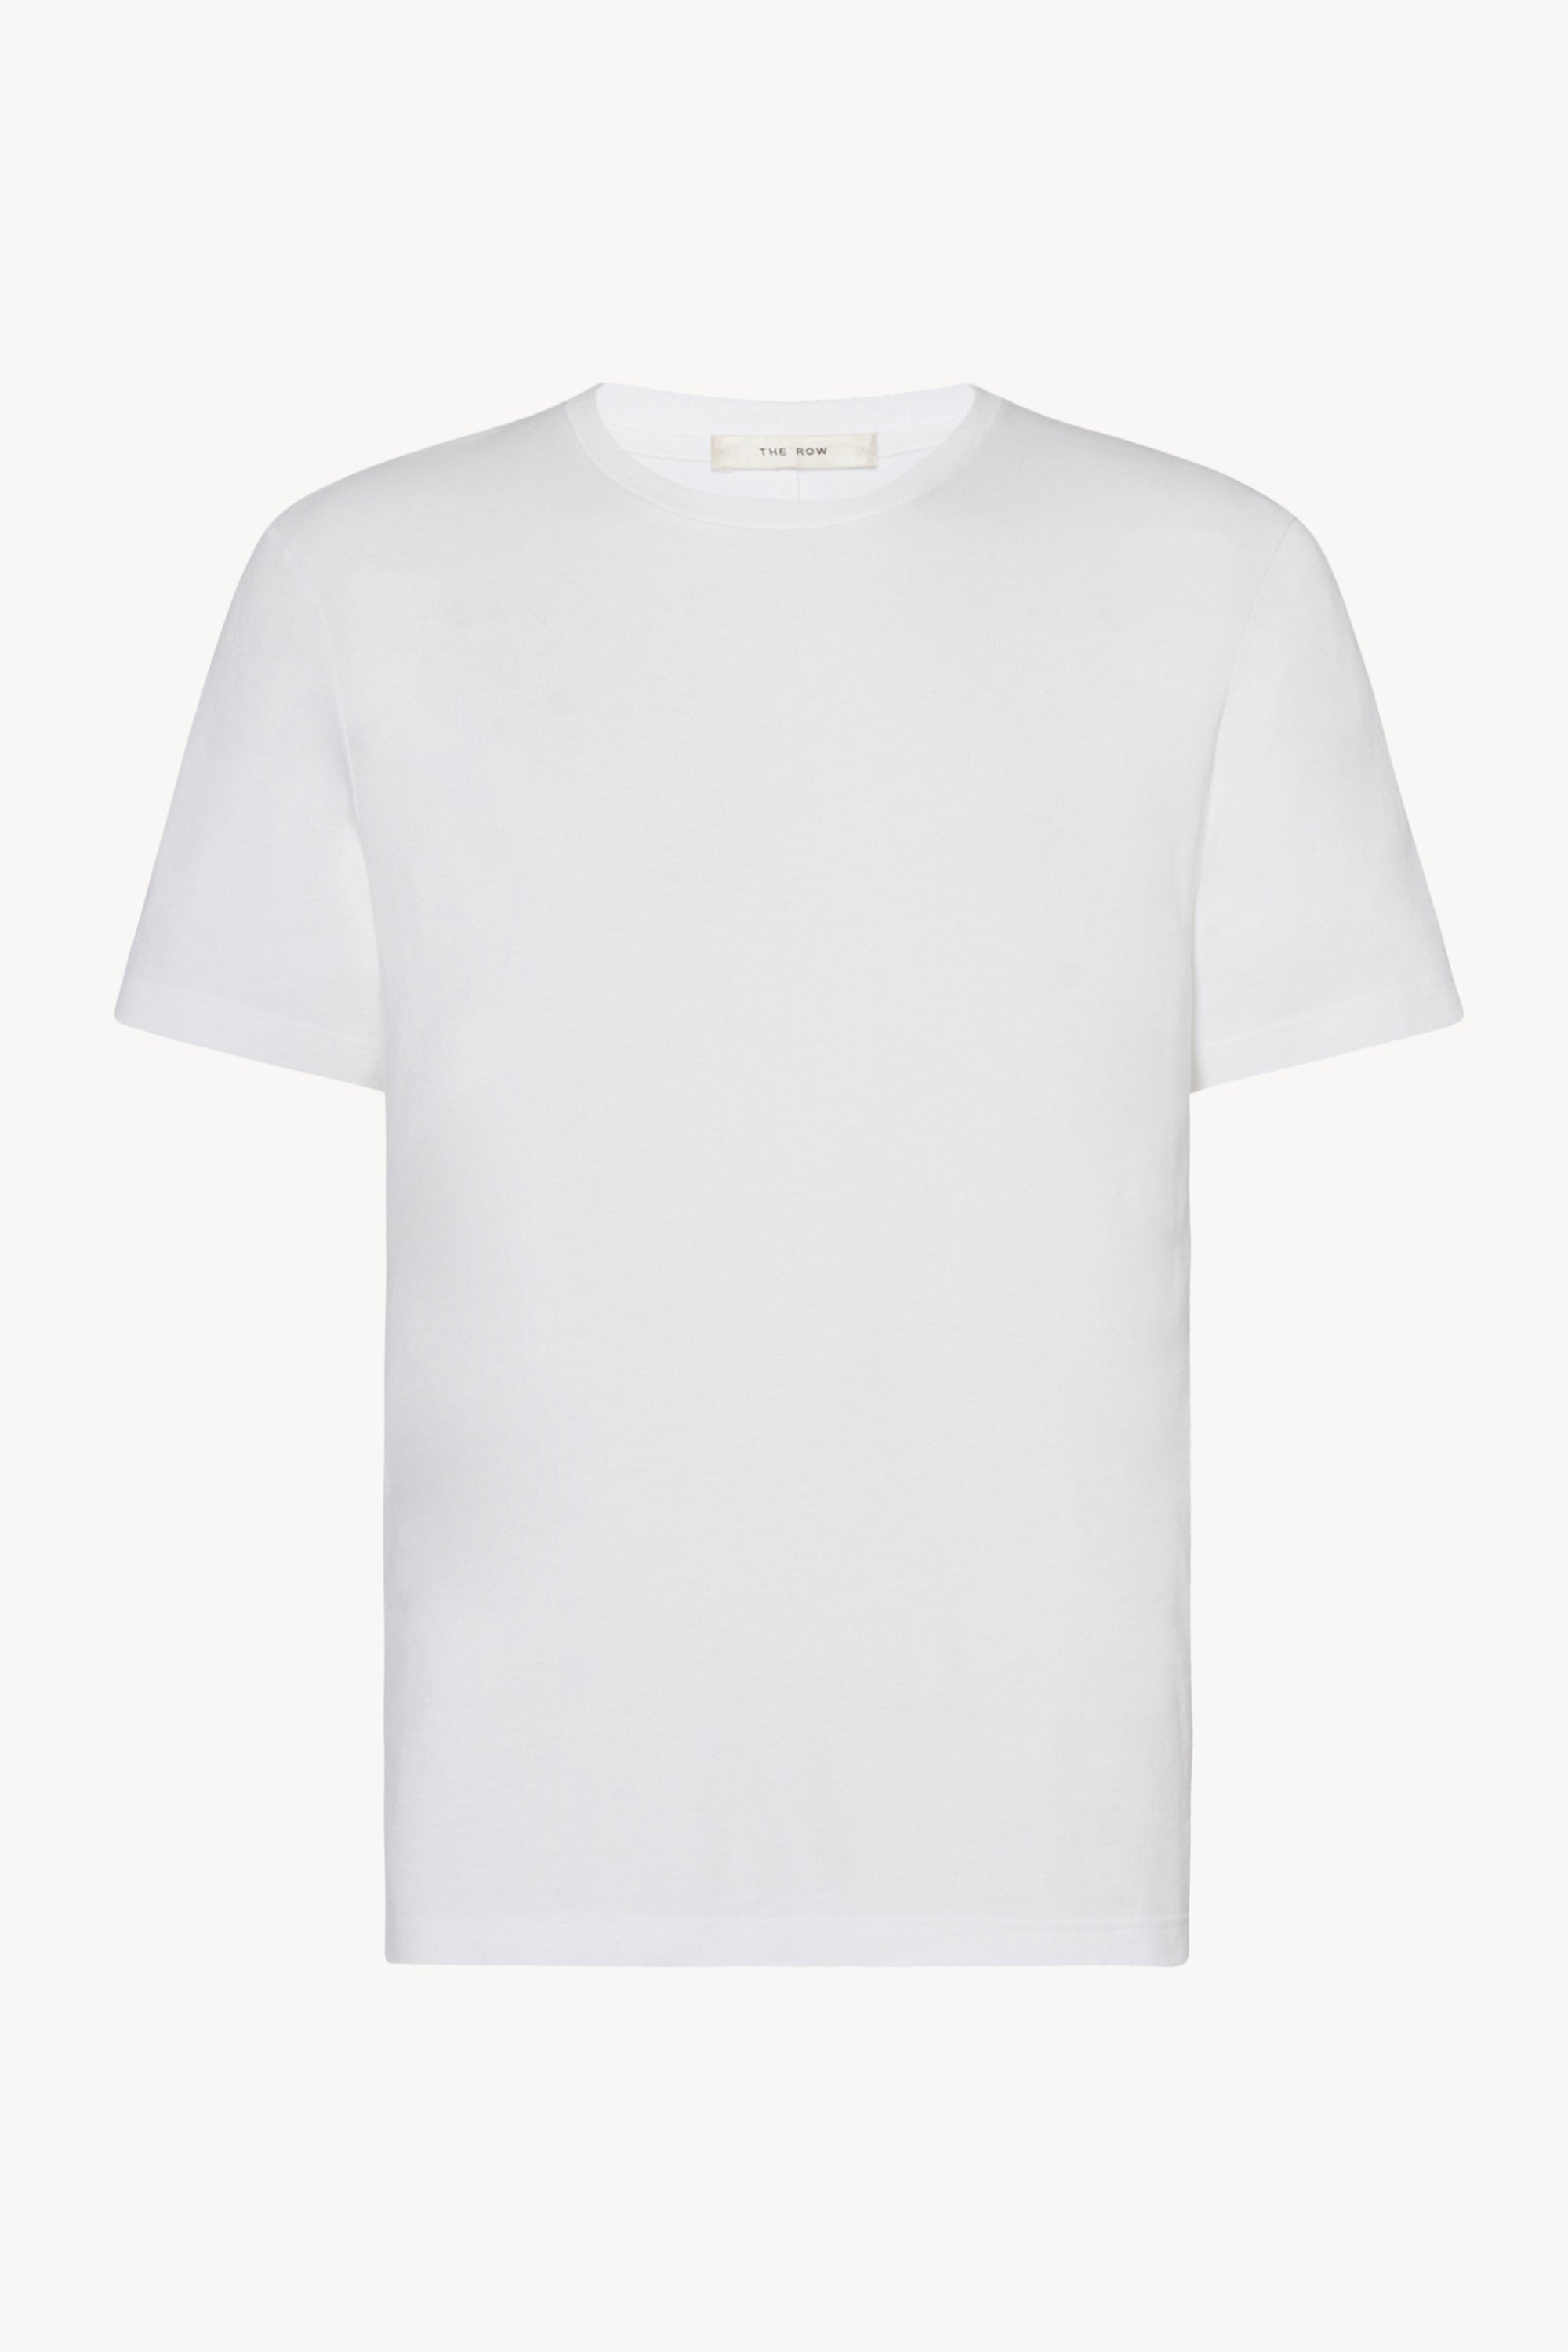 Shop Louis Vuitton Men's V-Neck T-Shirts